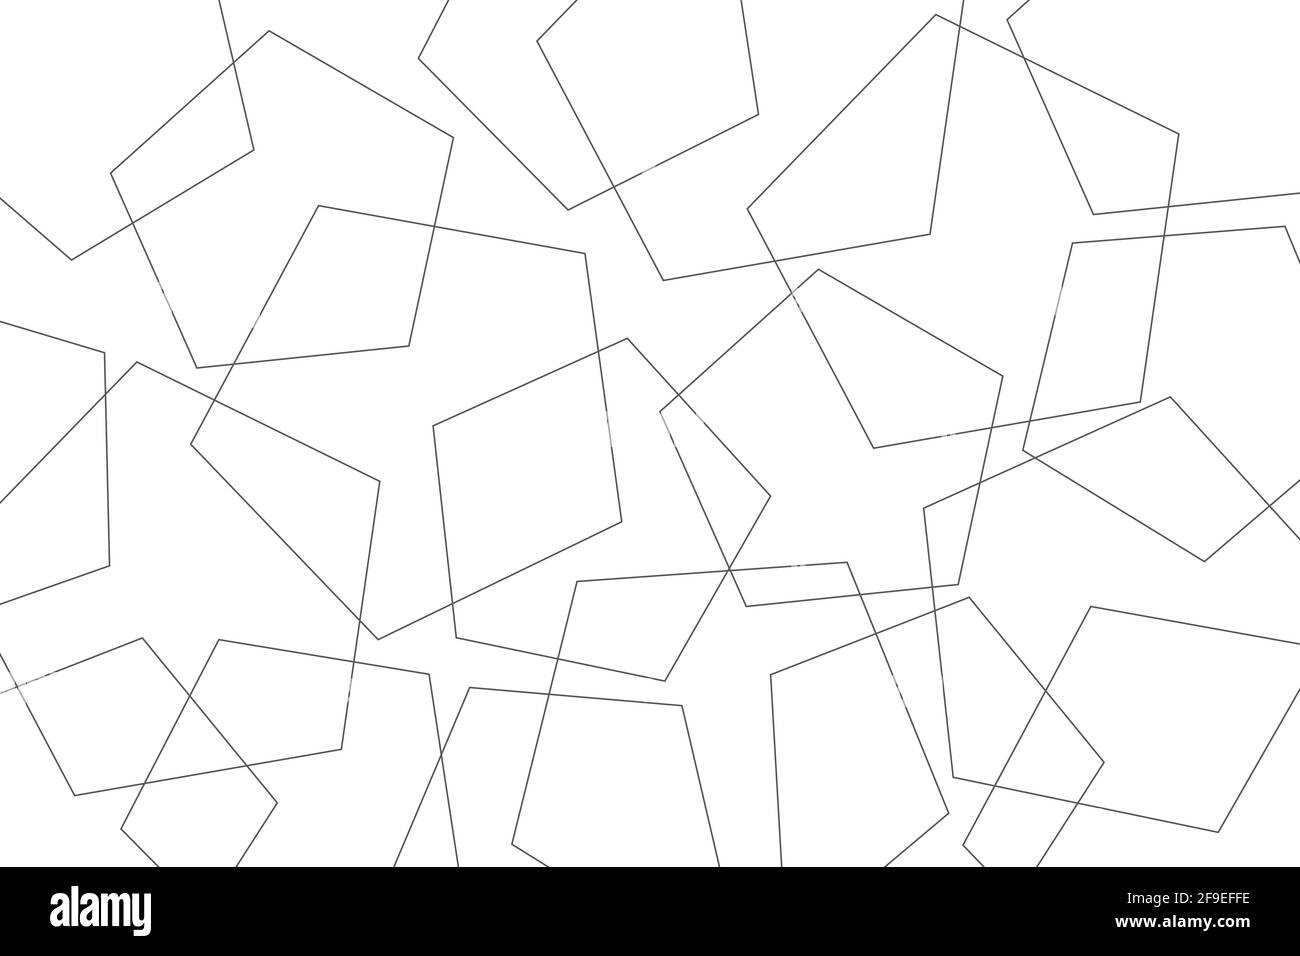 Abstraktes Hintergrundmuster mit überlappenden geometrischen Formen (Fünfecke). Moderne, einfache und verspielte Vektorkunst Stockfoto